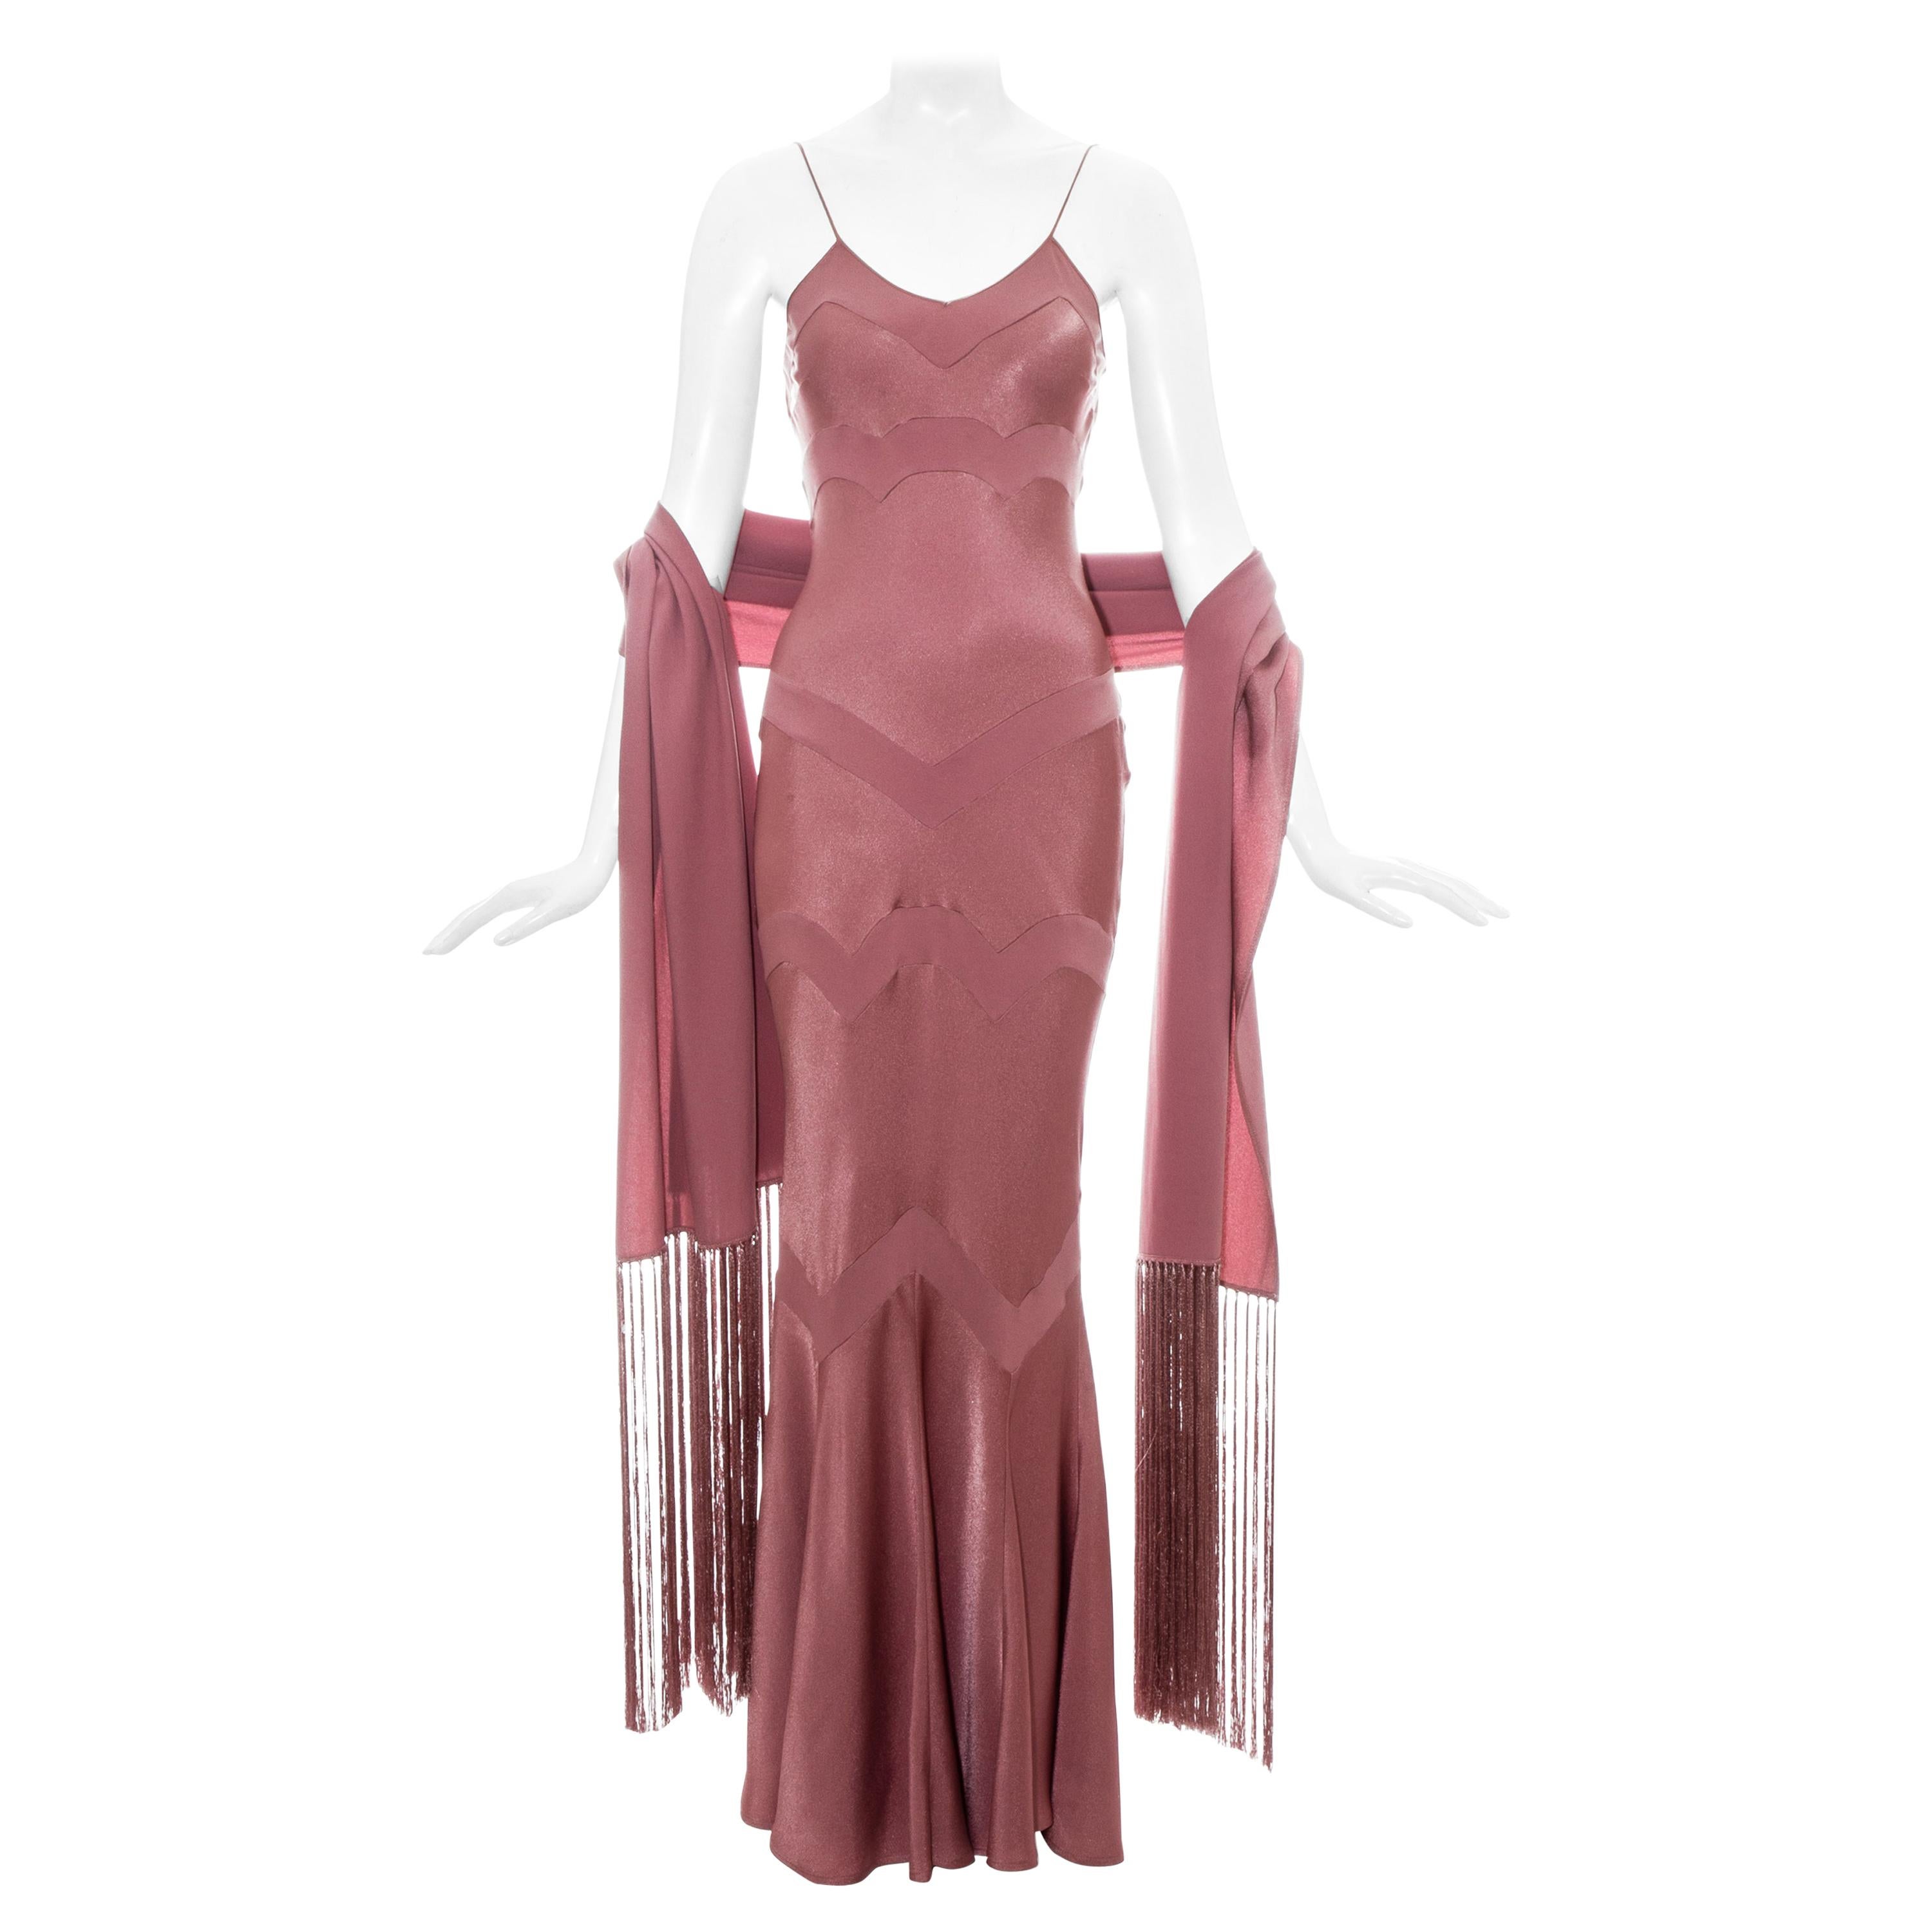 John Galliano pink satin bias cut dress with matching shawl, ss 2002